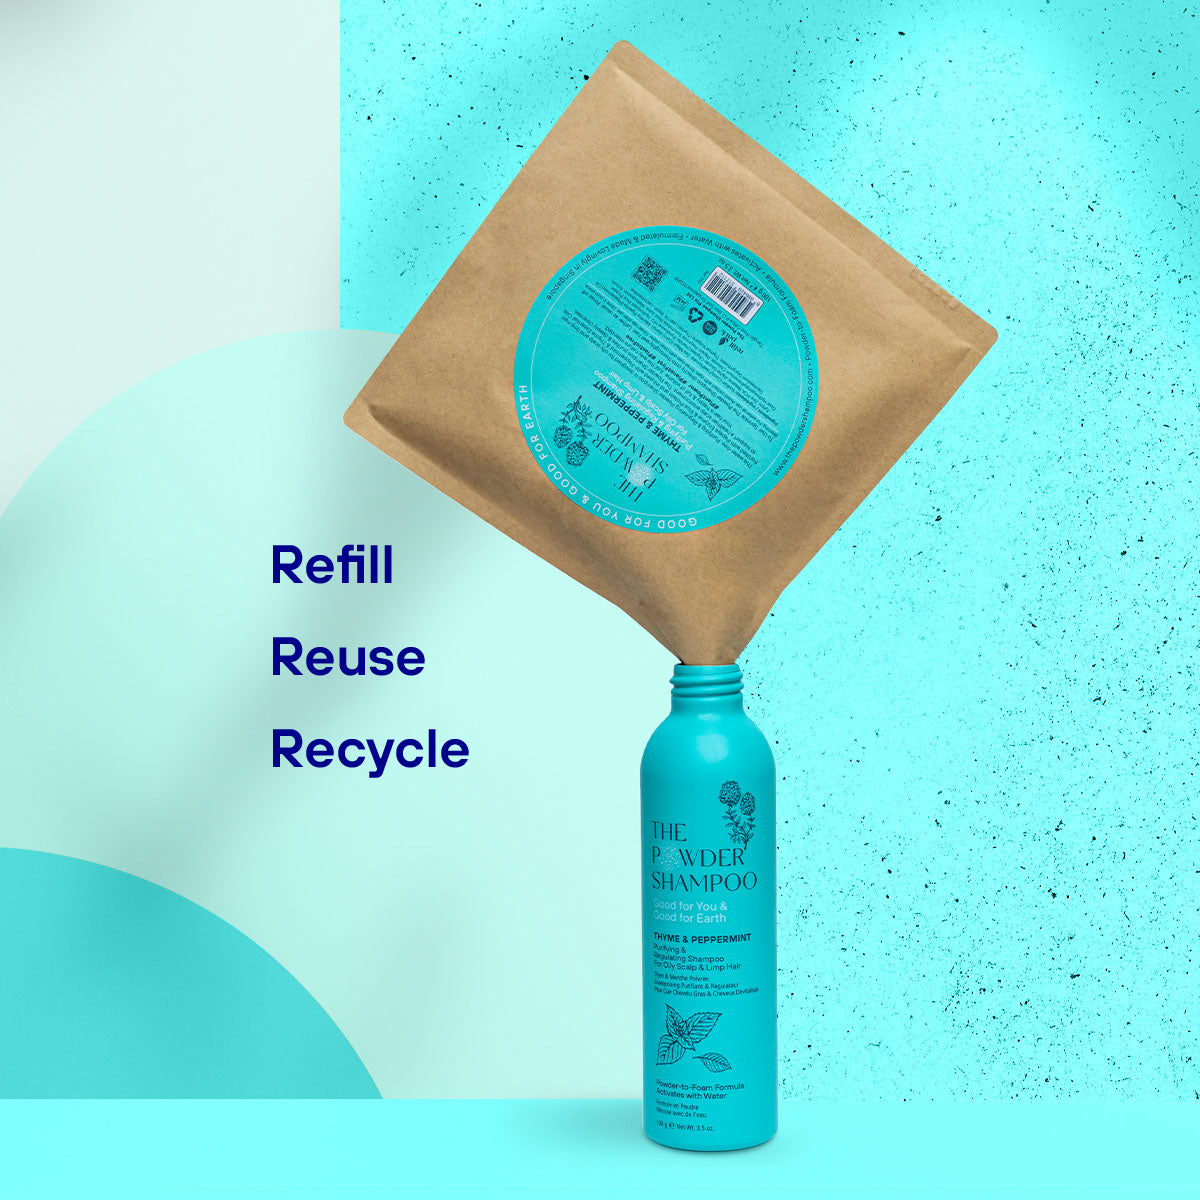 Starter Kit - Purifying & Regulating Powder Shampoo For Oily Scalp & Limp Hair